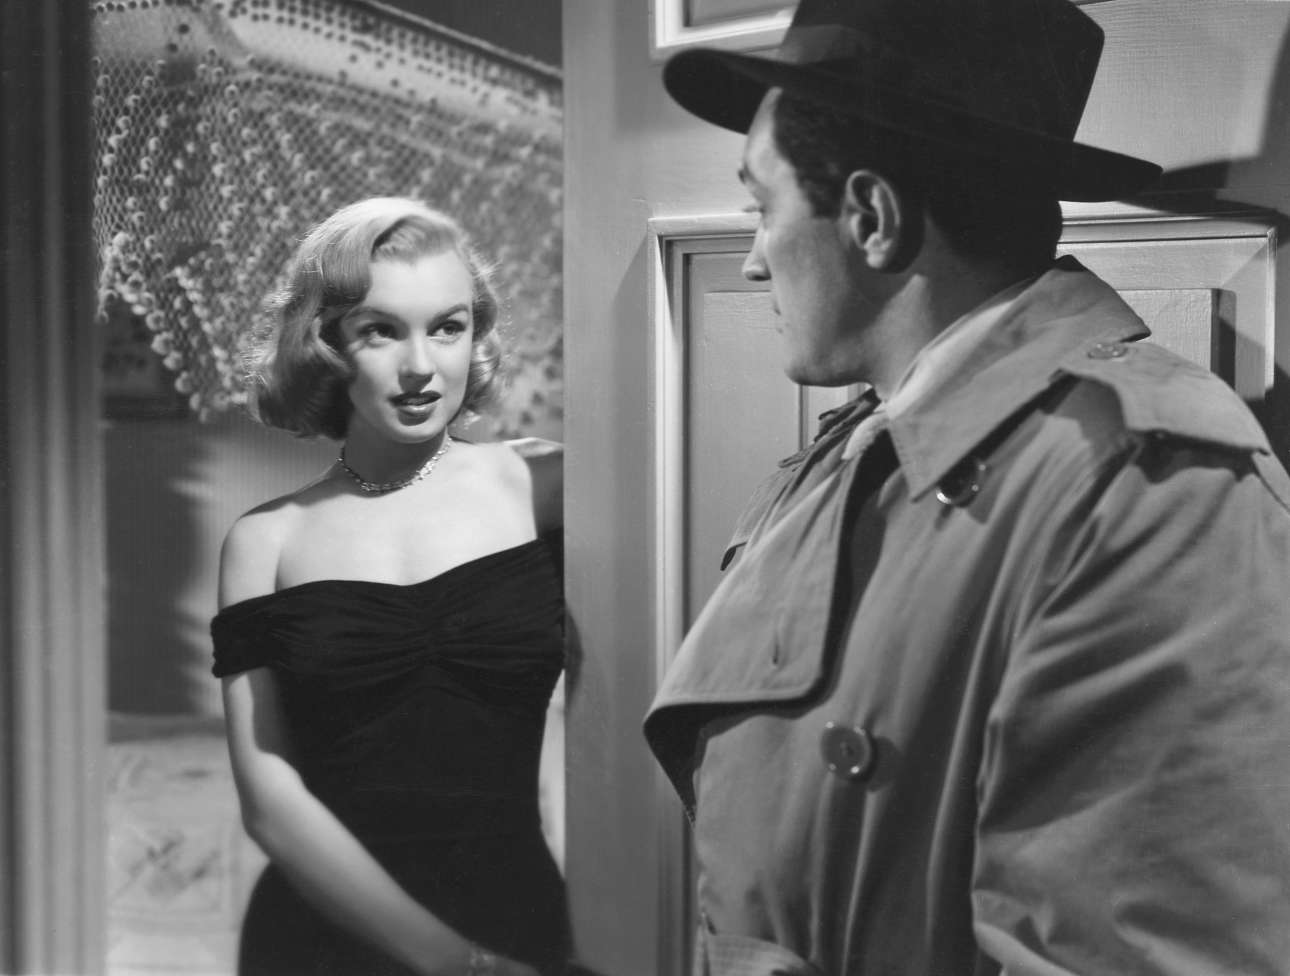 Η Μονρόε στην ταινία του Τζον Χιούστον «Η ζούγκλα της Ασφάλτου» το 1950, όπου υποδυόταν την ερωμένη ενός γκάνγκστερ. Ηταν από τις πρώτες ερμηνείες της που έκανε τους κριτικούς να την προσέξουν